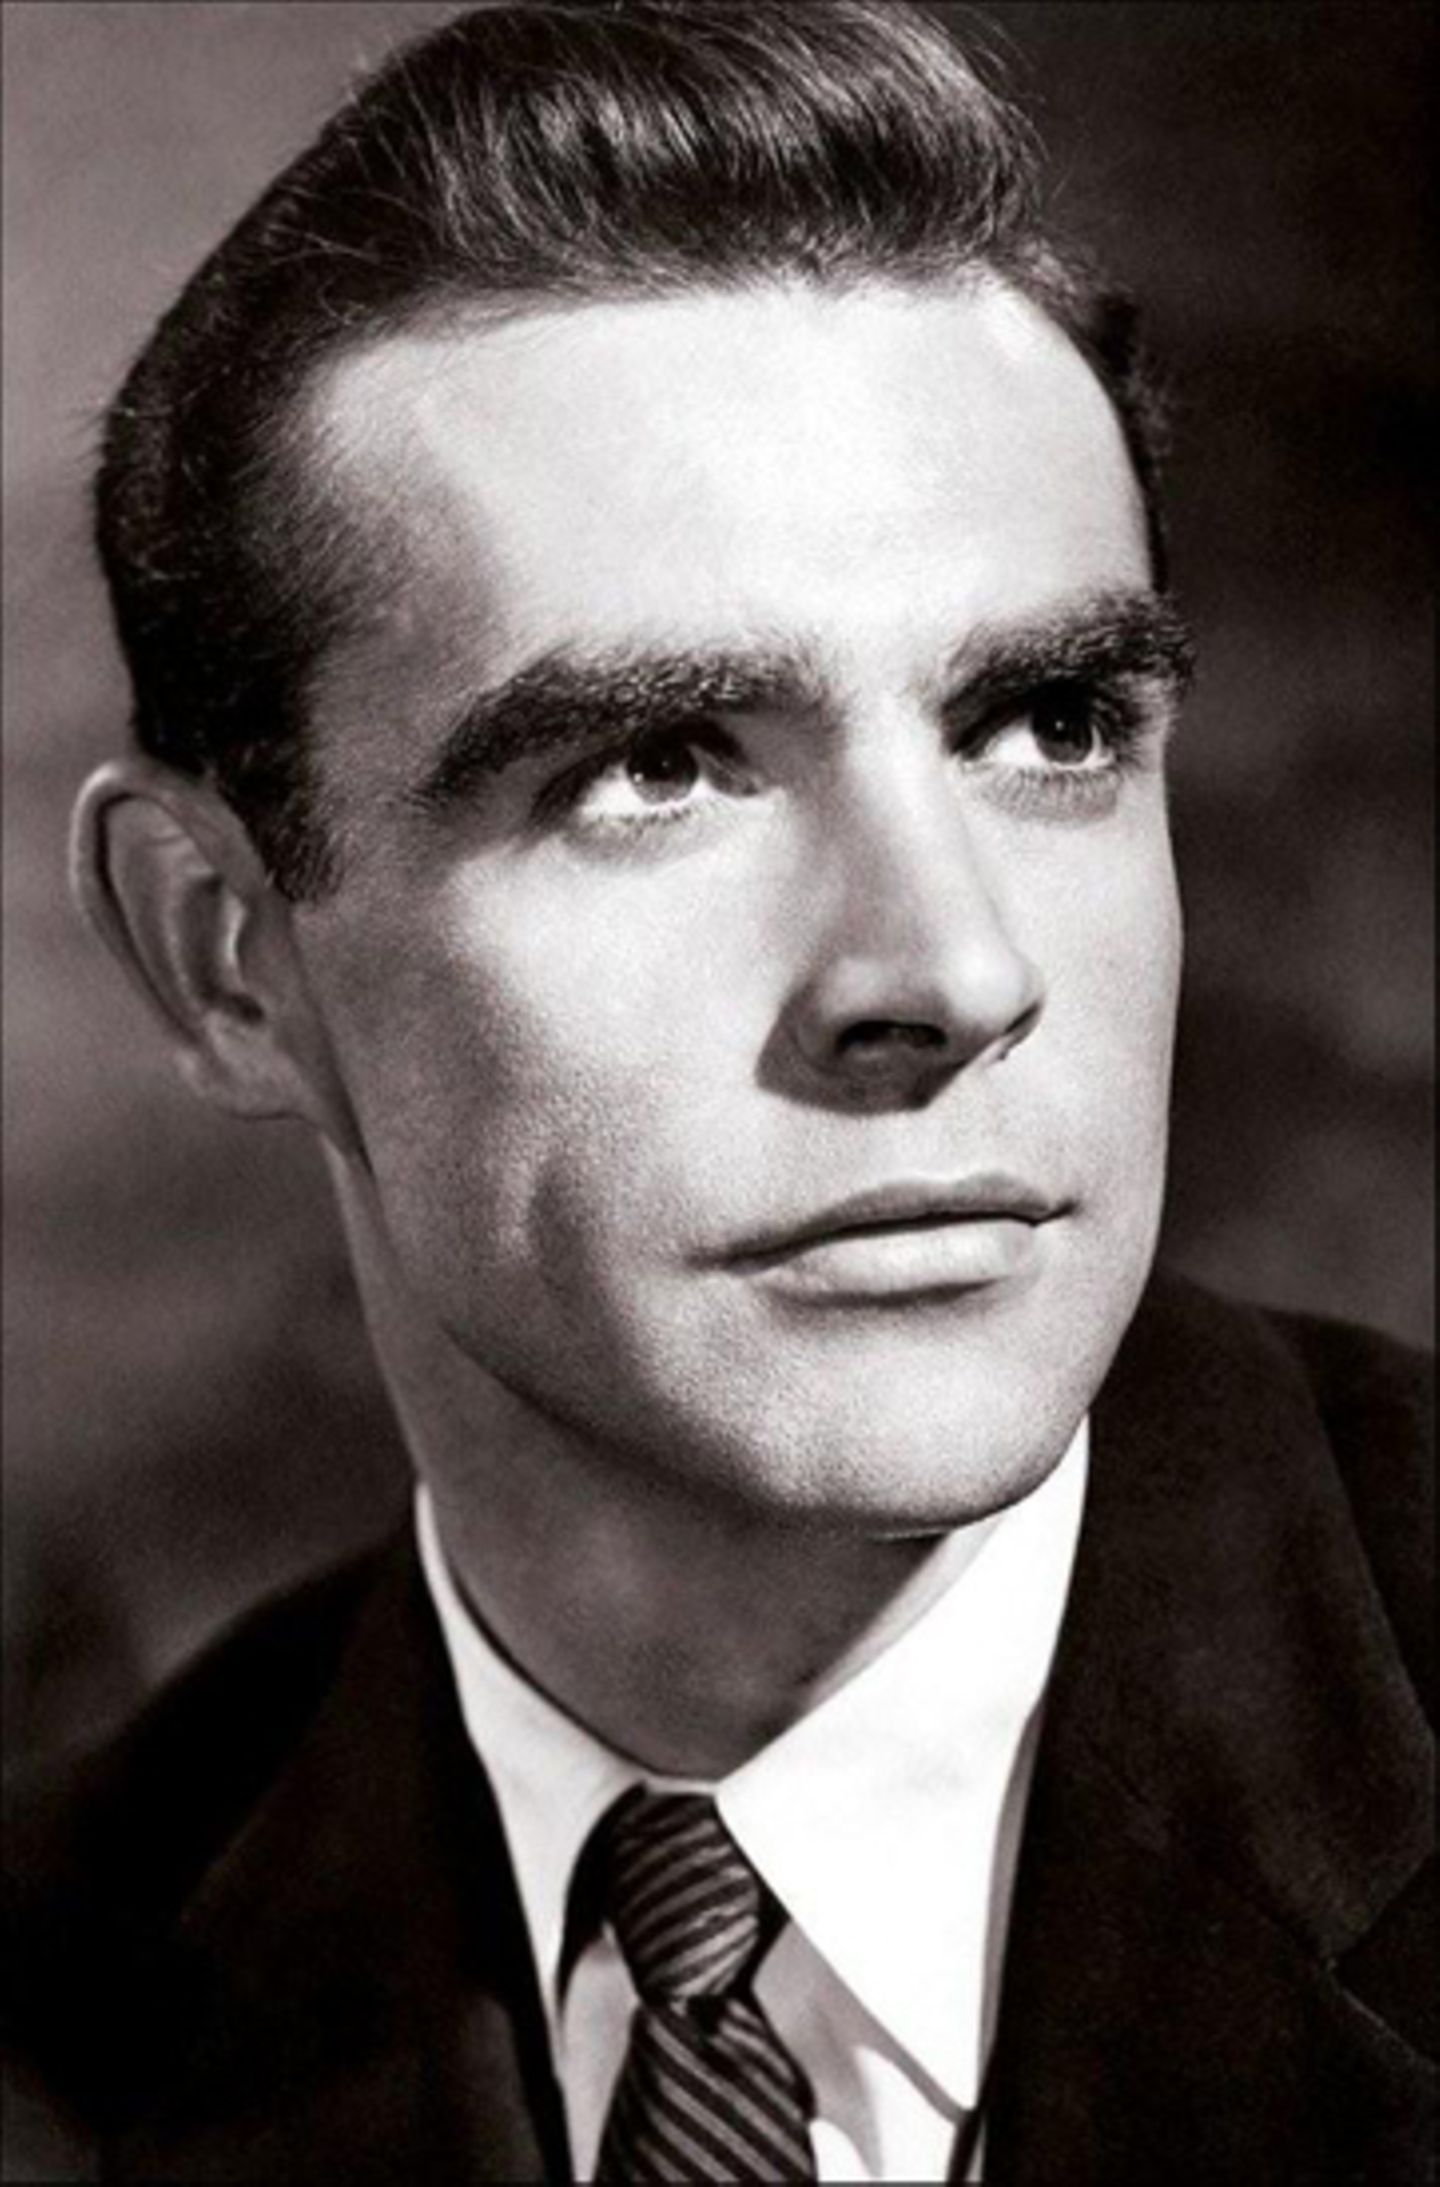 Thomas Sean Connery wurde 1930 in Fountainbridge, Edinburgh, als Sohn eines Hilfsarbeiters und einer Putzfrau geboren.